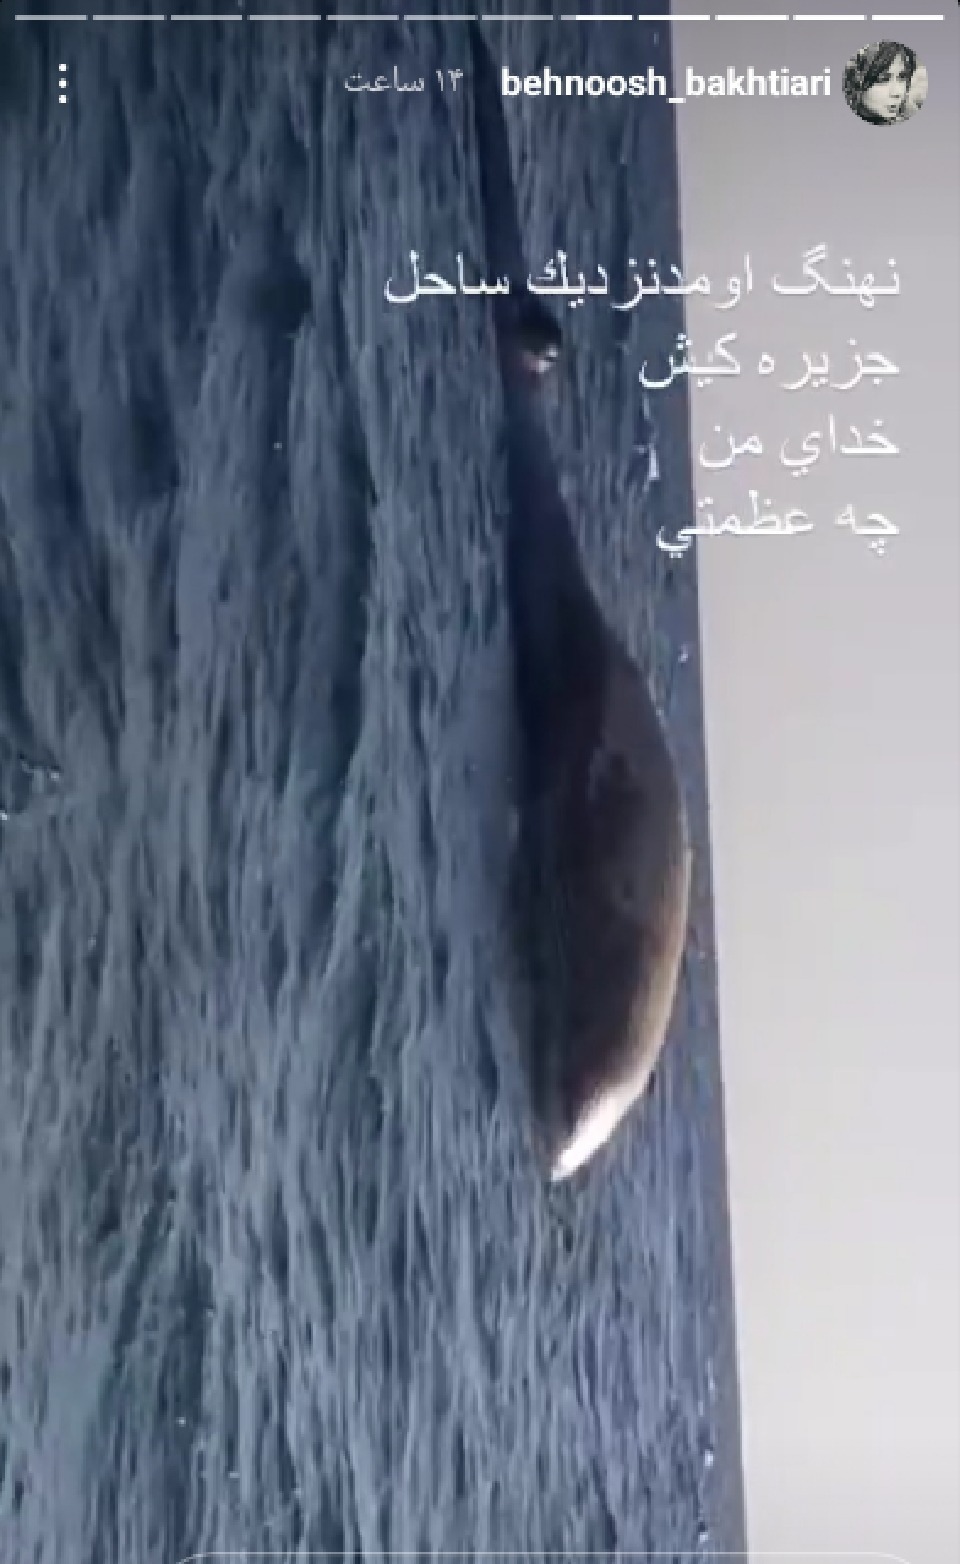 نهنگی که بهنوش بختیاری را شوکه کرد+عکس